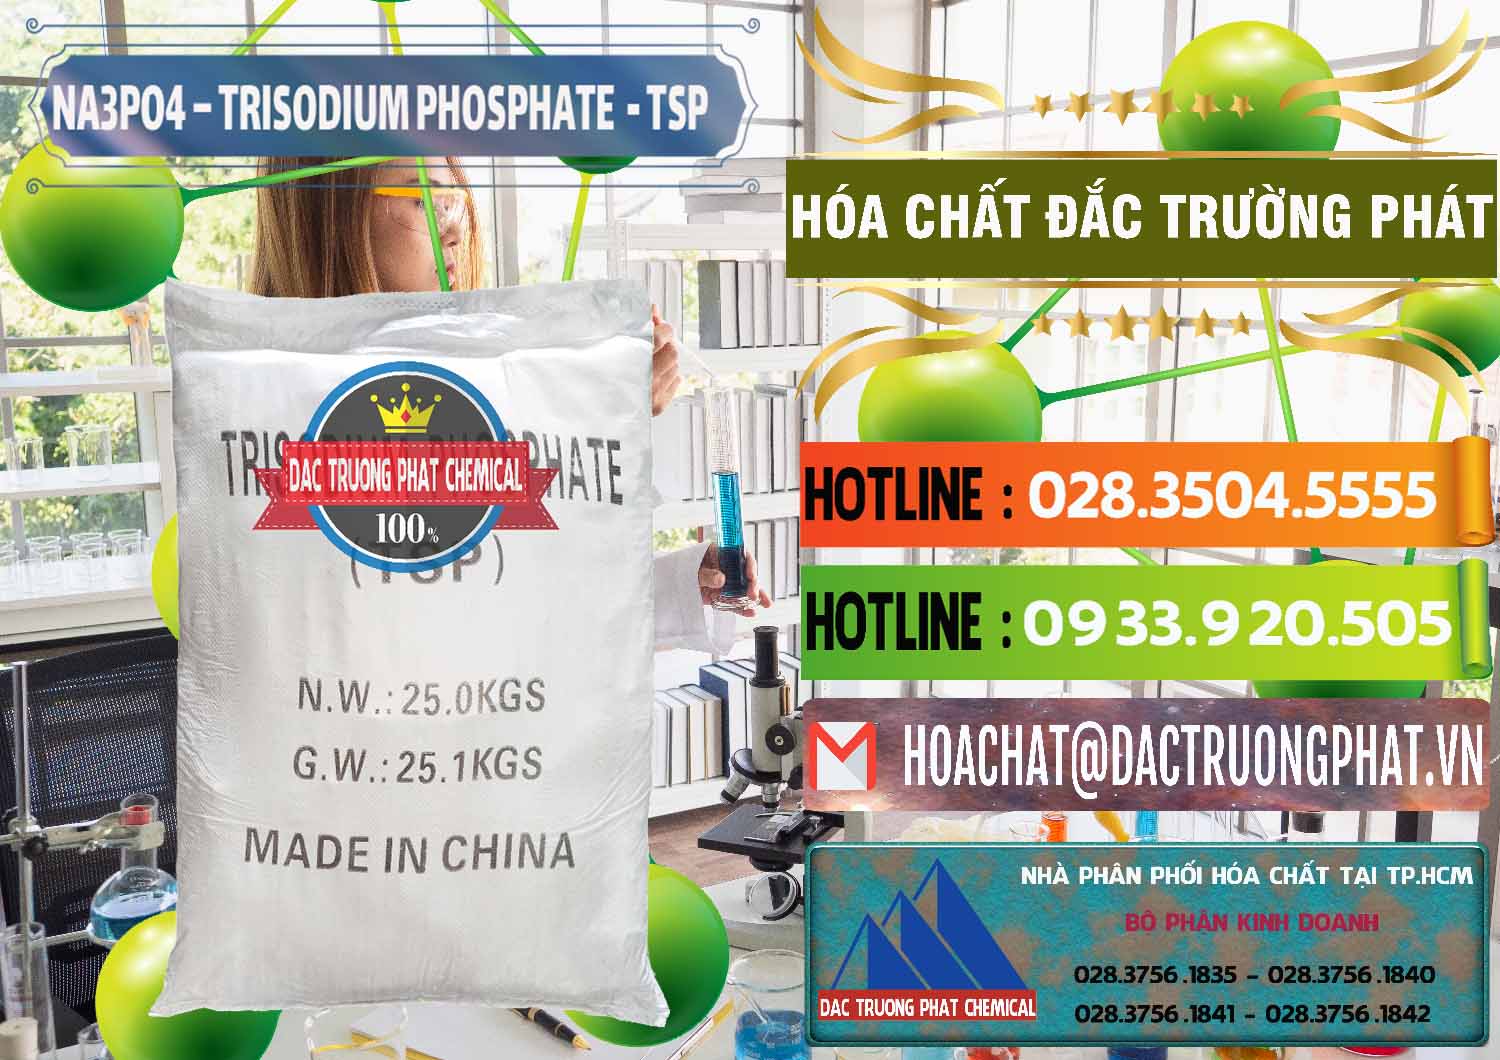 Cty chuyên phân phối ( bán ) Na3PO4 – Trisodium Phosphate Trung Quốc China TSP - 0103 - Công ty cung cấp ( phân phối ) hóa chất tại TP.HCM - cungcaphoachat.com.vn